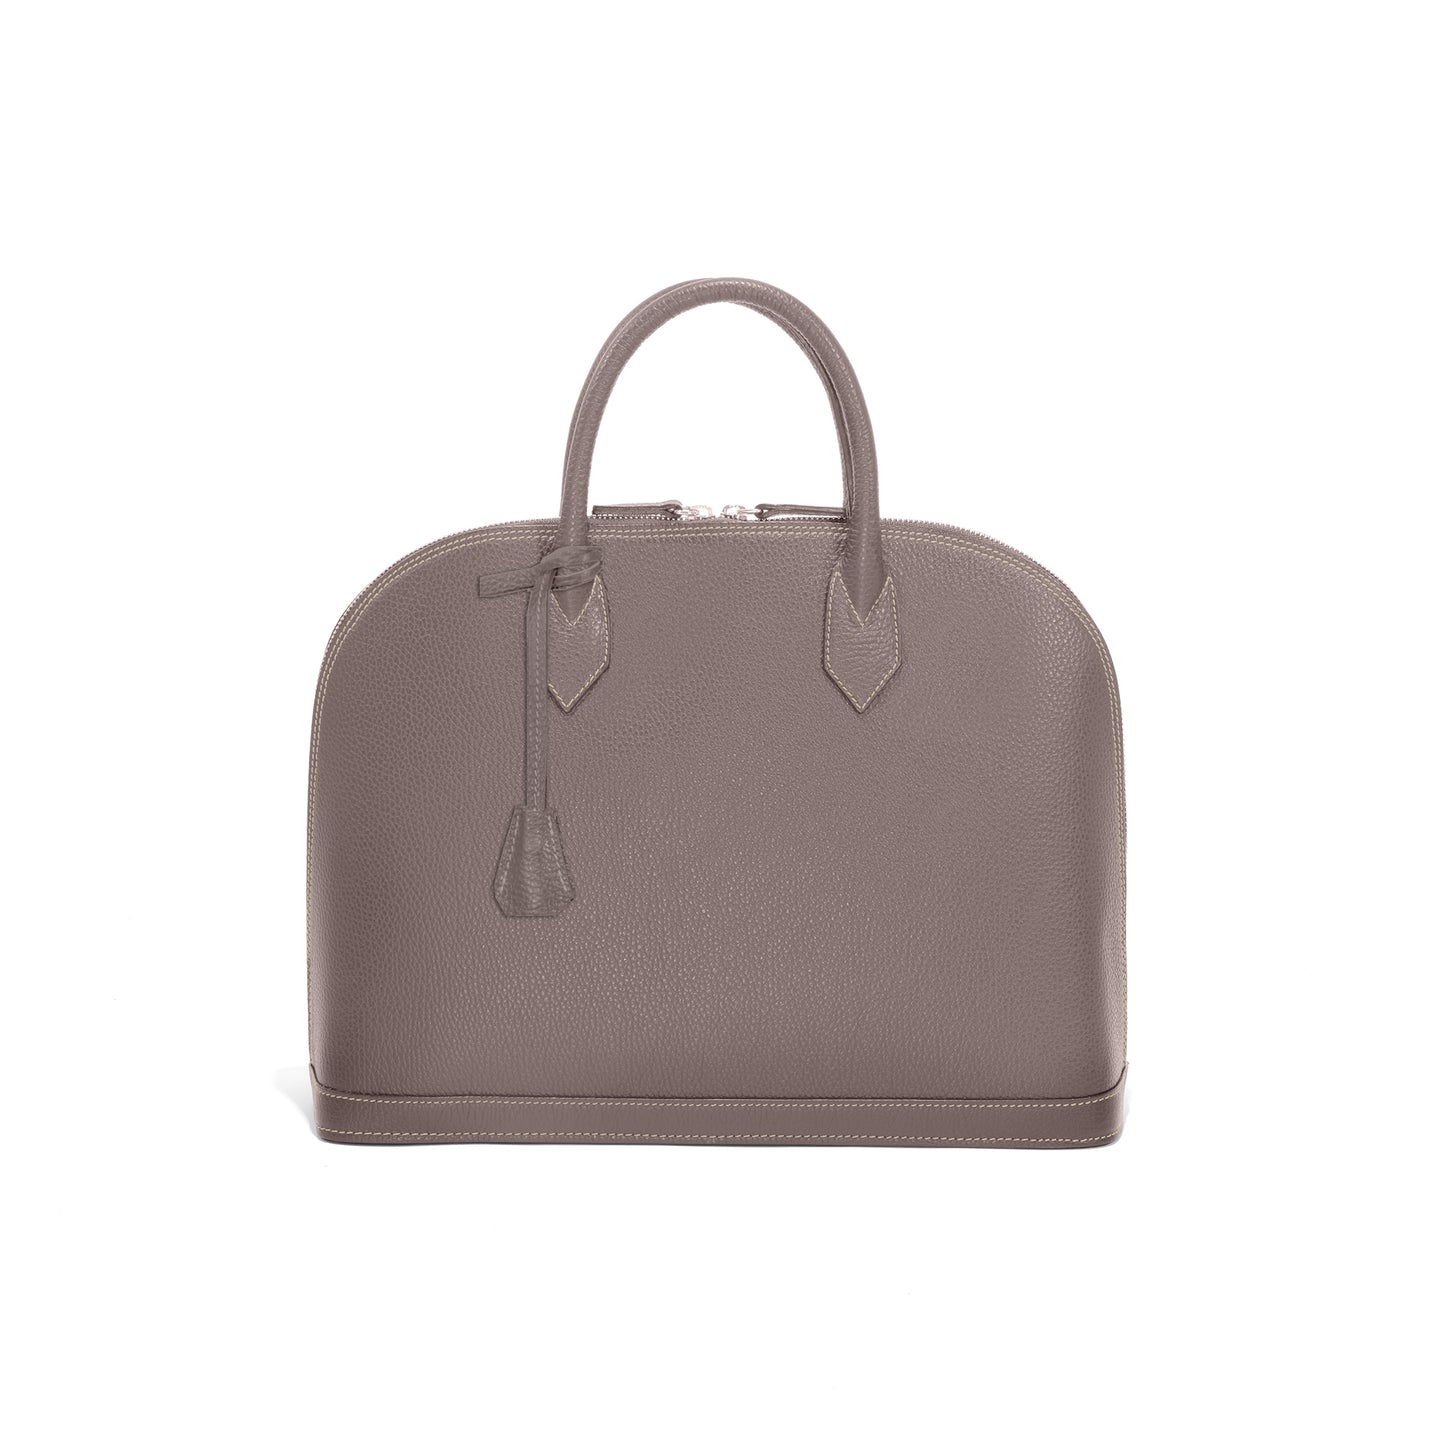 CONDOTTI - 2Way Handbag